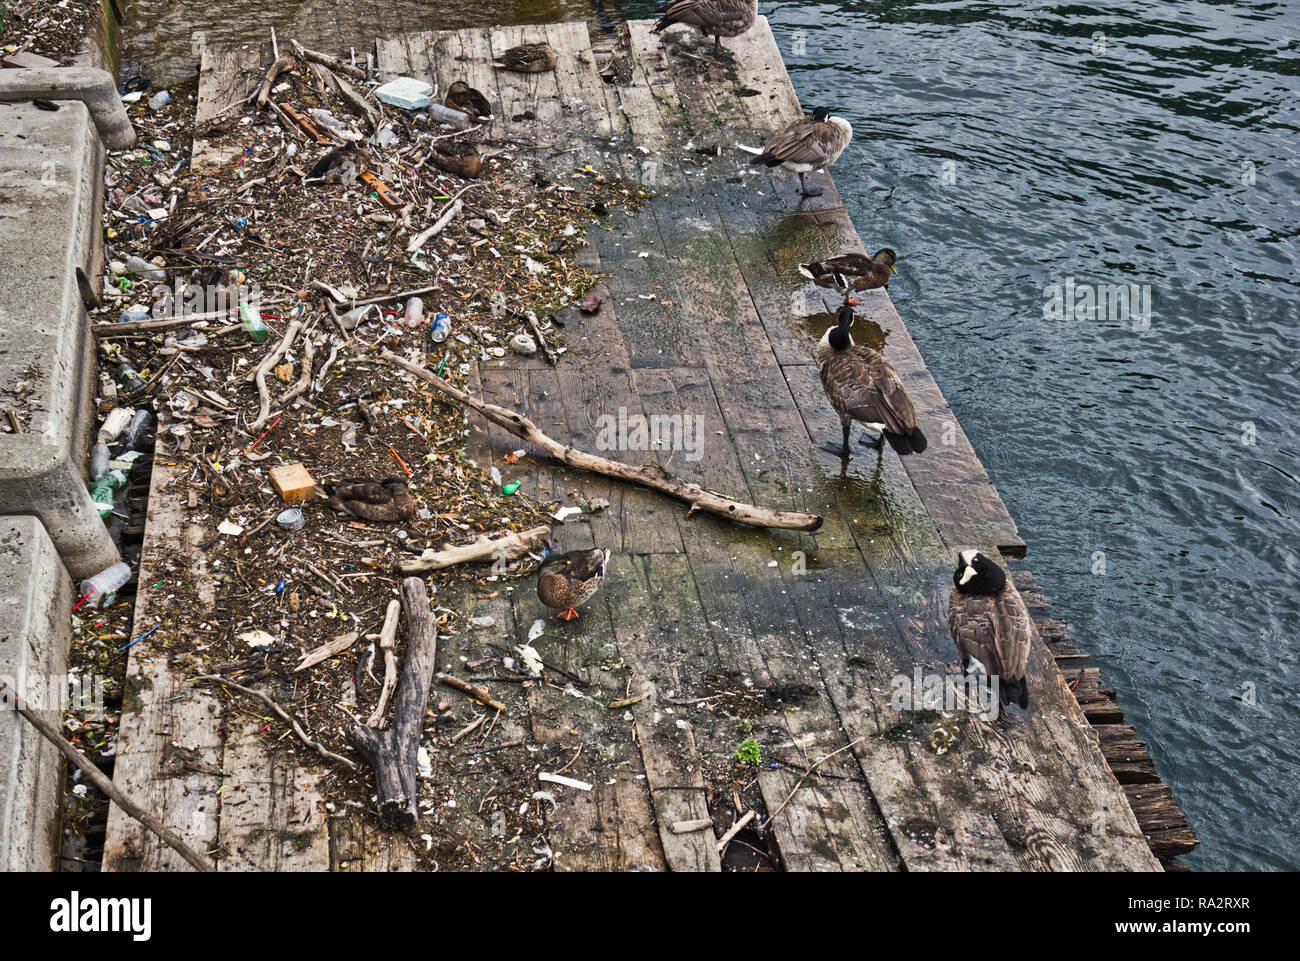 Pájaros sobre una plataforma de madera entre los descartados de plástico y otros objetos flotantes, Toronto, Ontario, Canadá Foto de stock